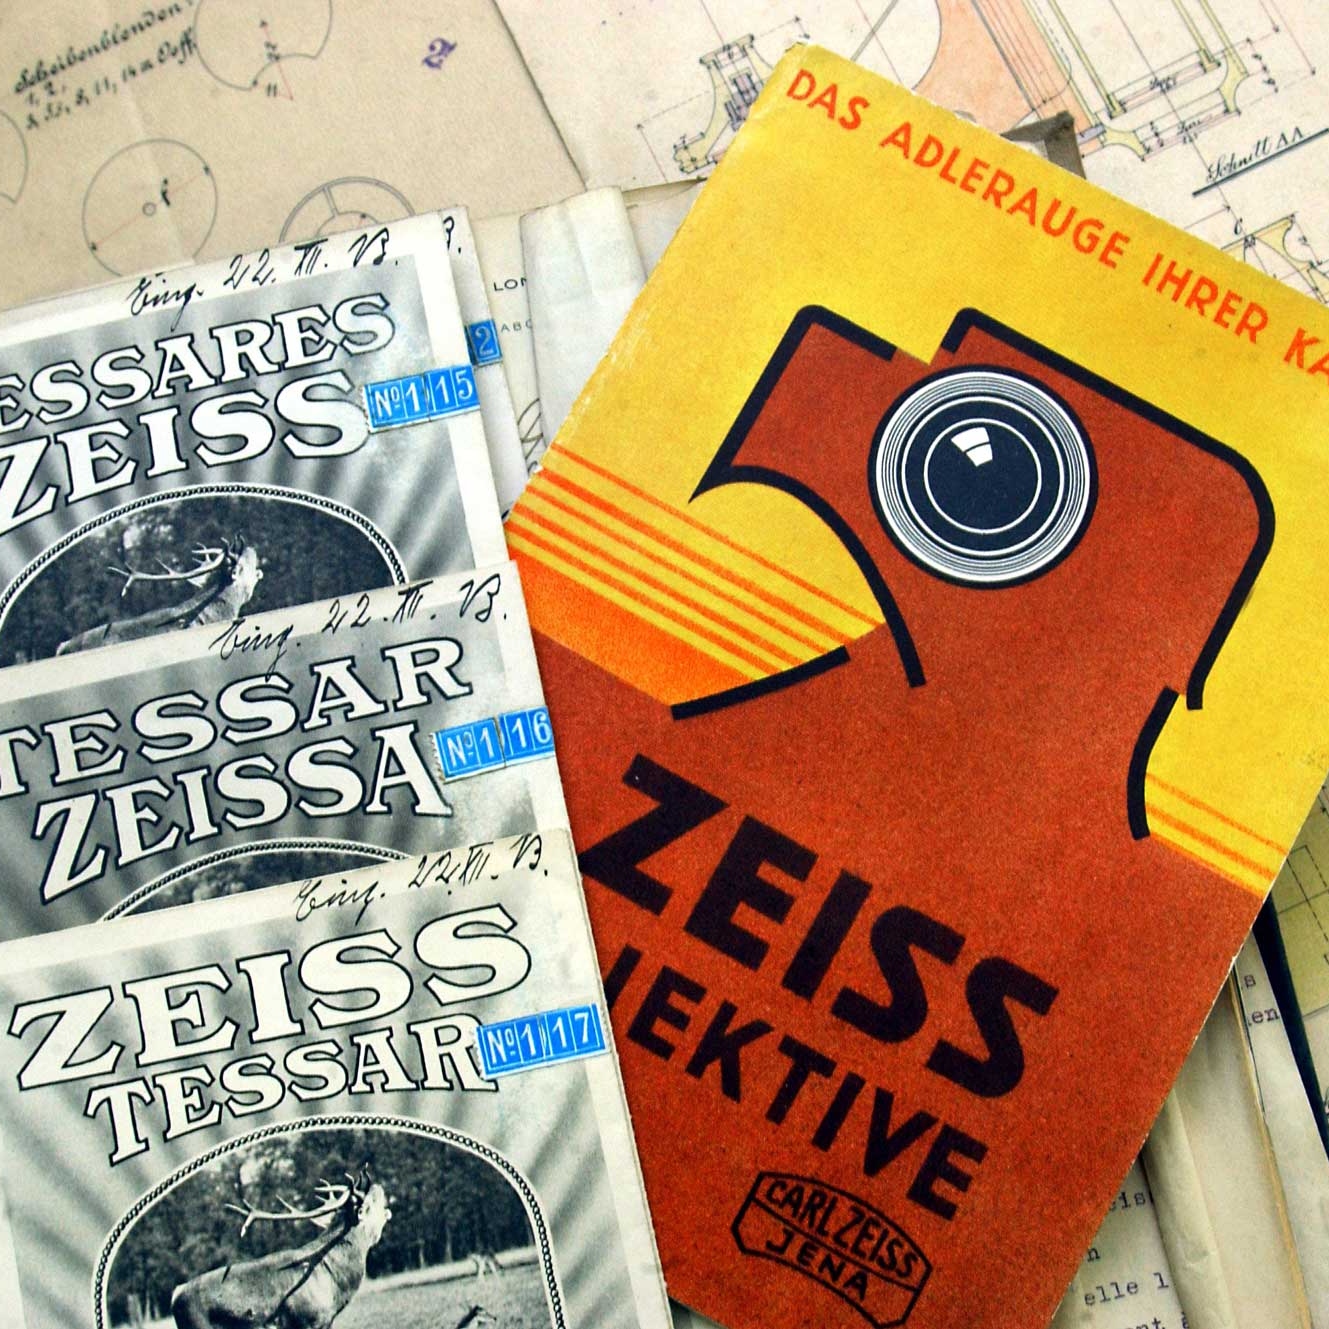 Druckschriften aus dem ZEISS Archiv